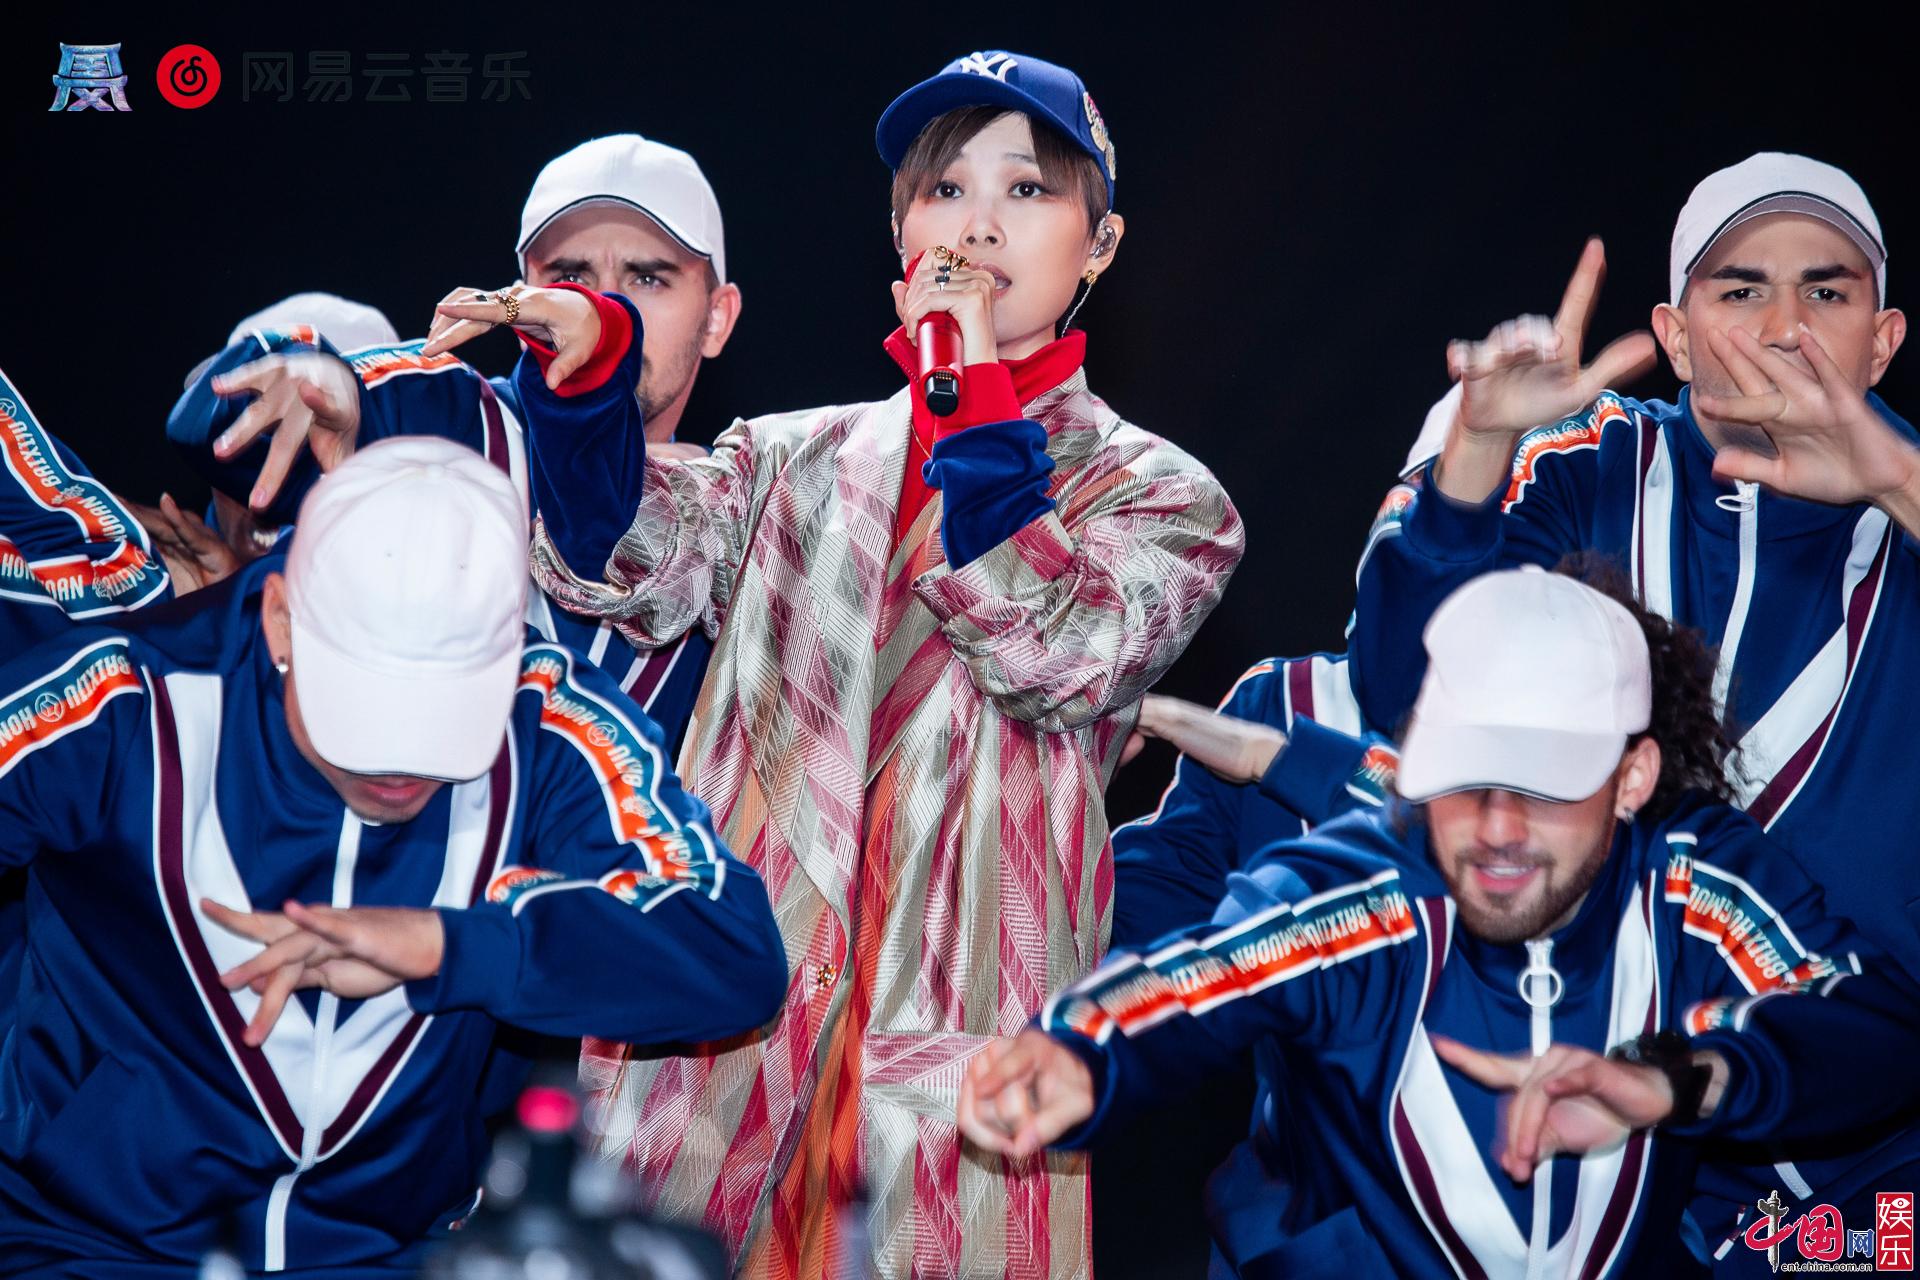 Звезды на торжественной музыкальной церемонии в Пекине